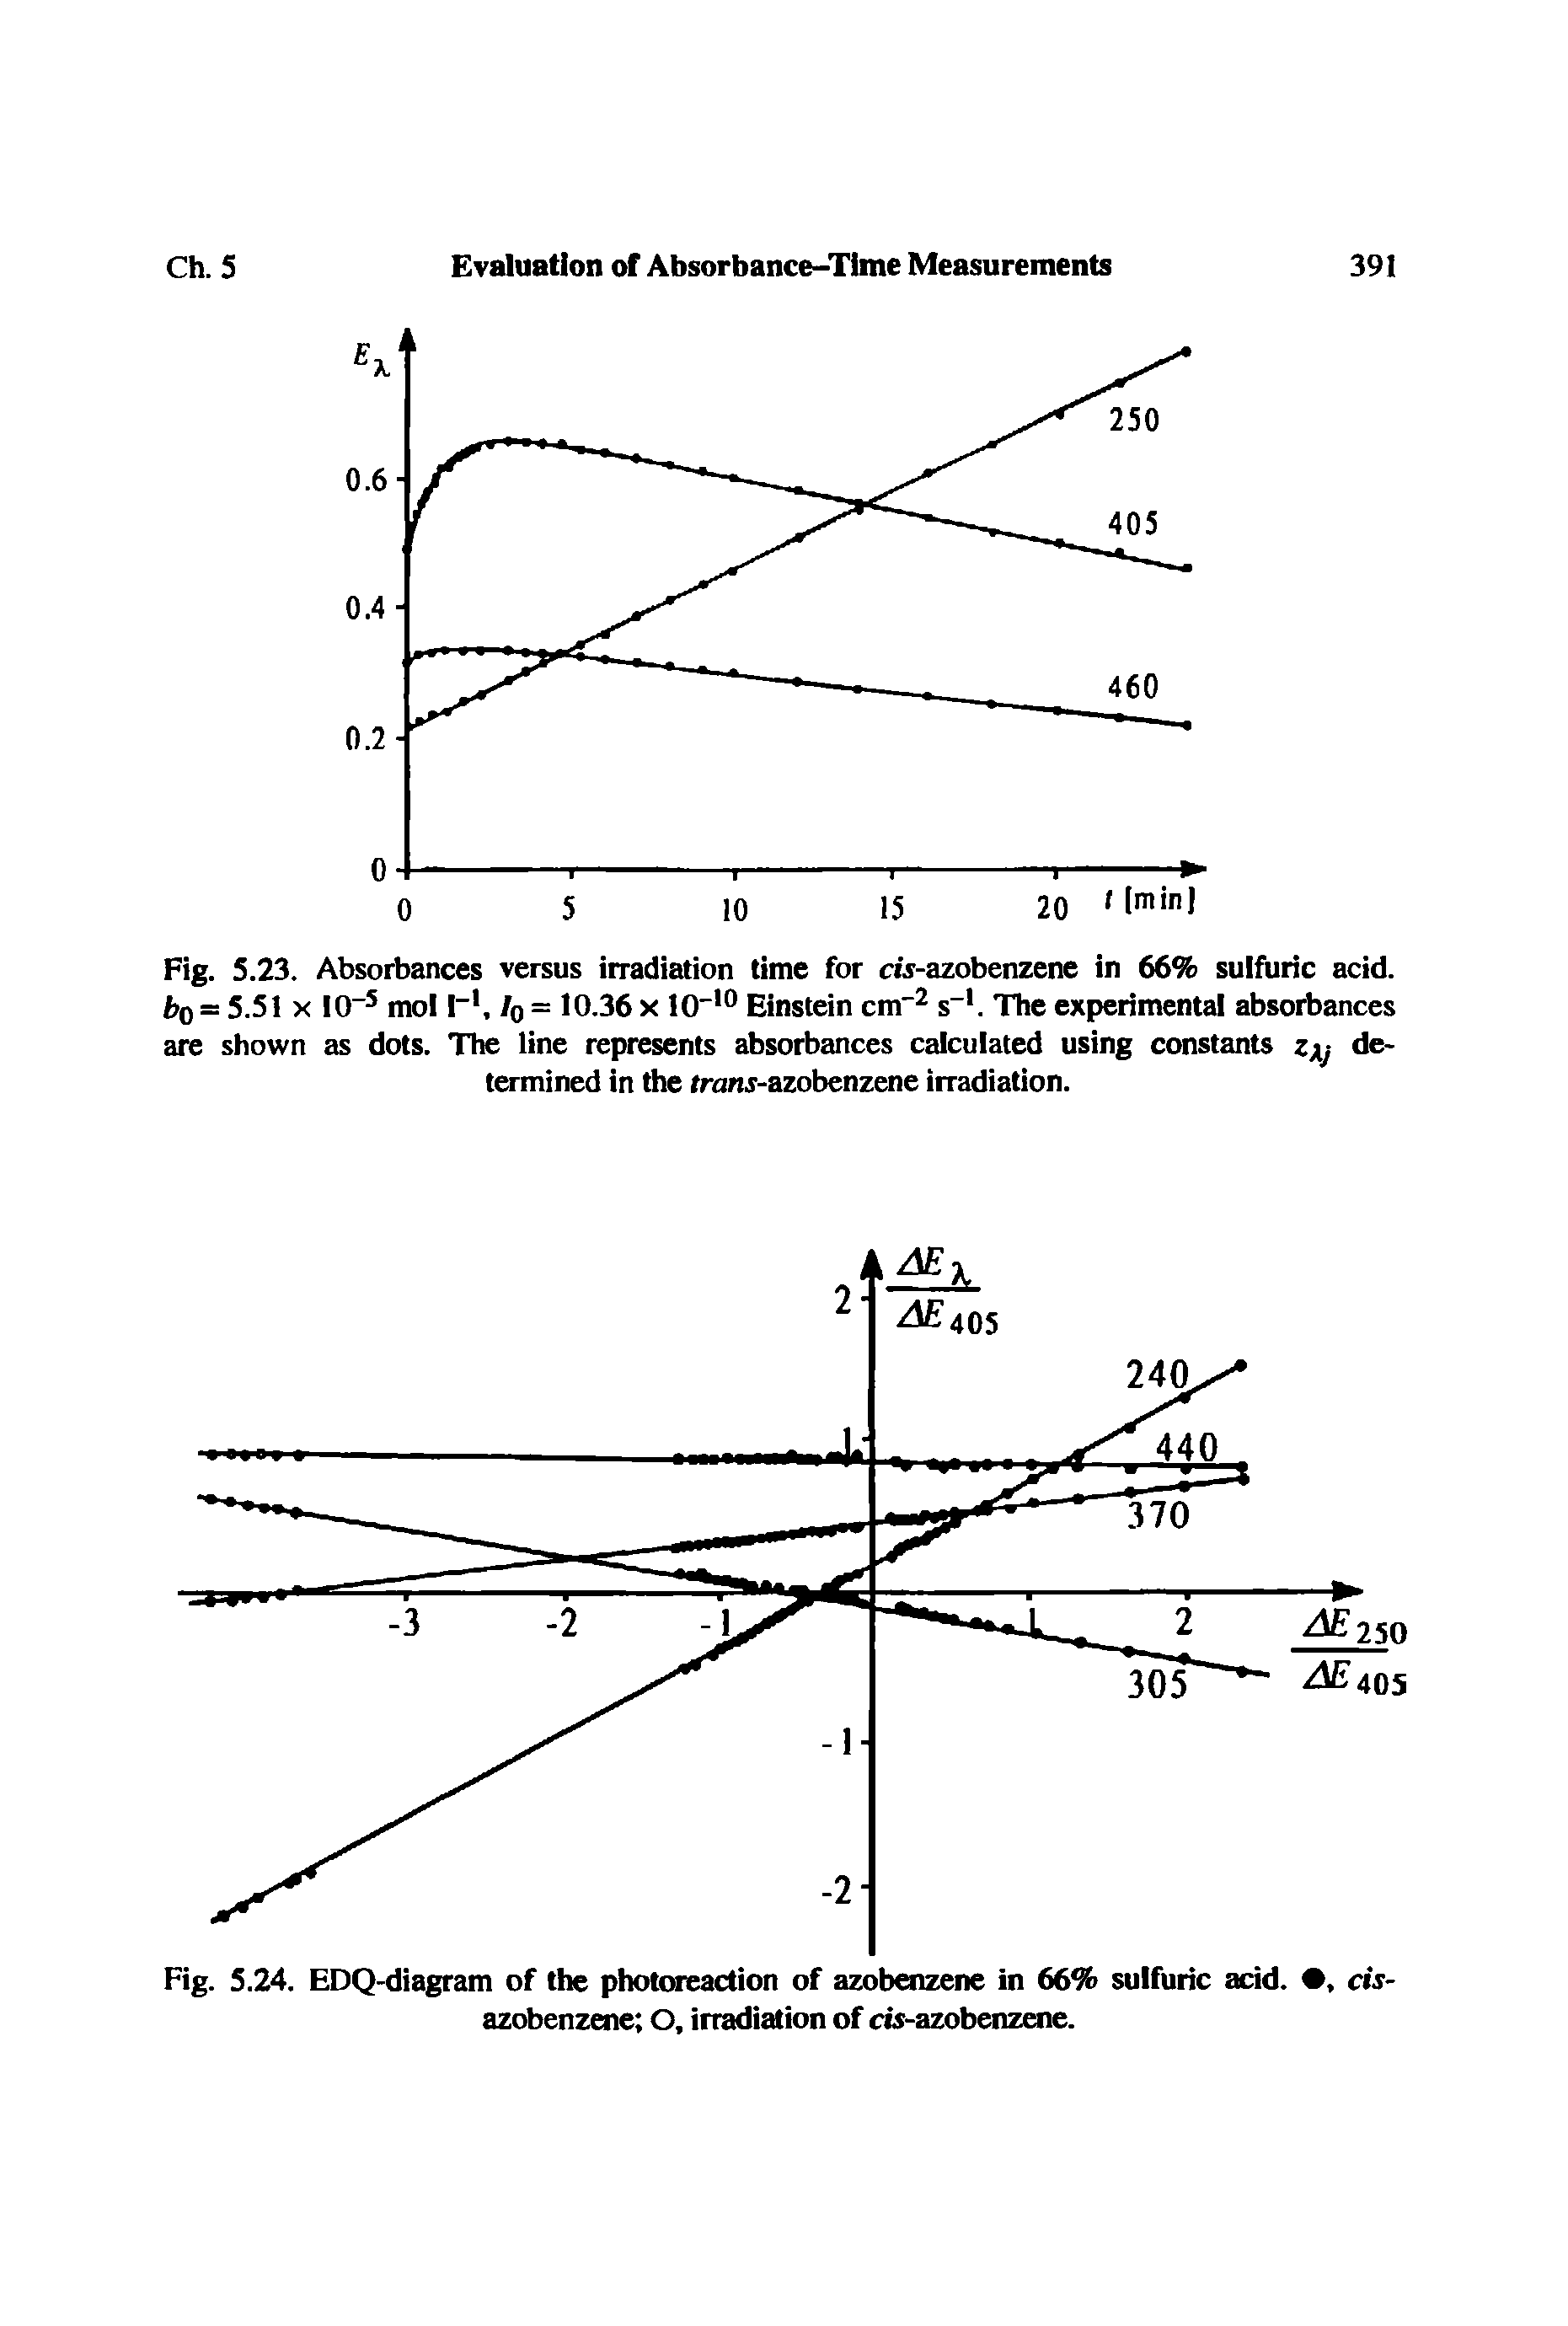 Fig. 5.24. EDQ-diagram of the photoreaction of azobenzene in 66% sulfuric acid, azobenzene O, irradiation of cts-azobenzene.